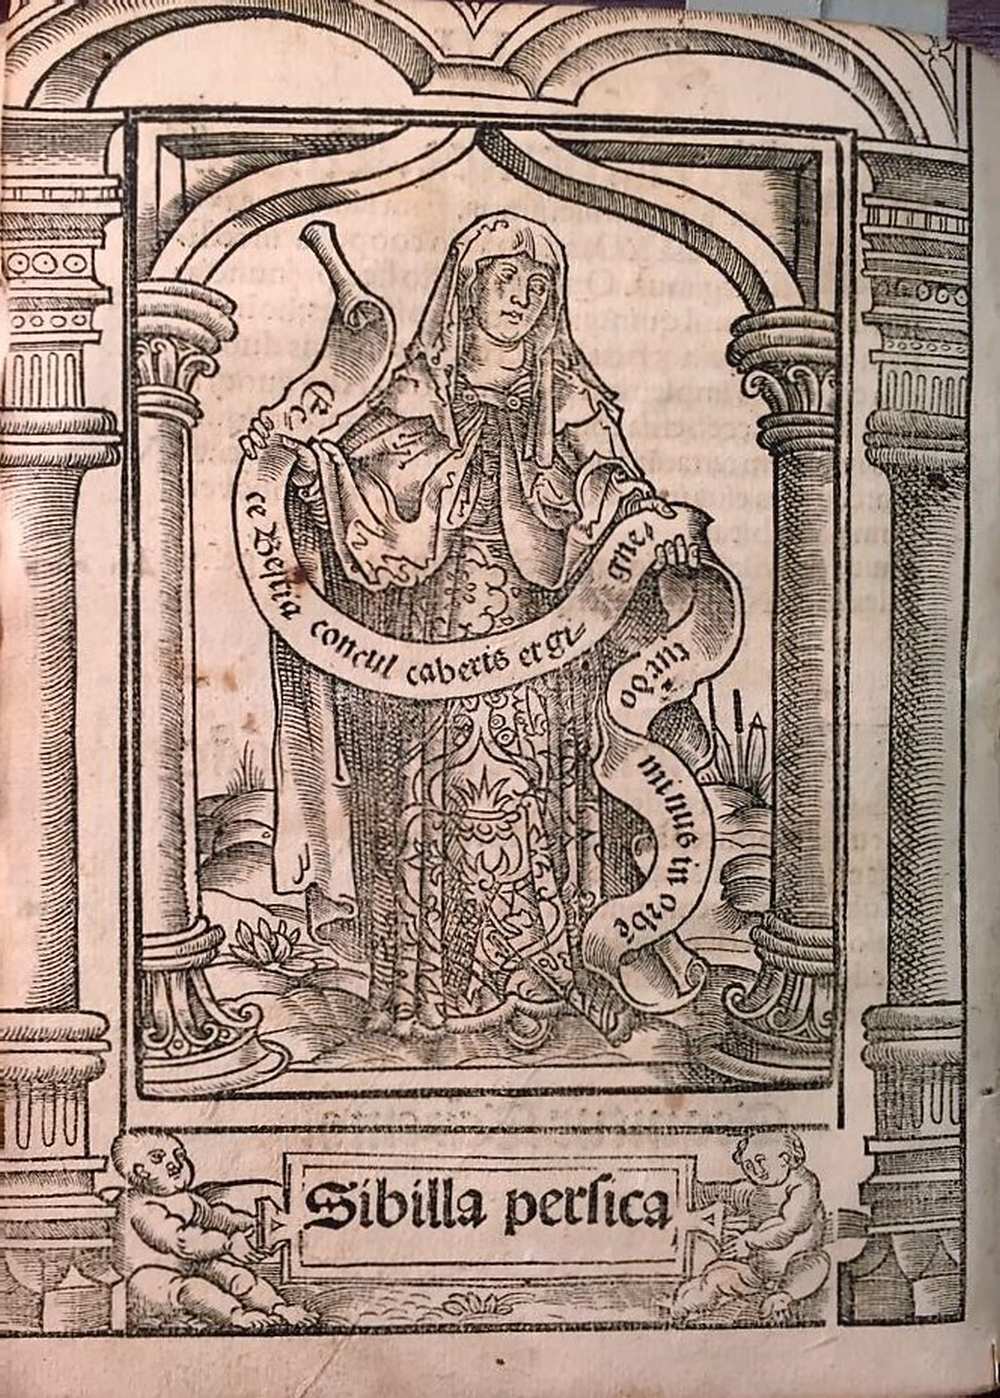 Philippus Barberiis, Opusculum vaticaniis Sibillarum, Oppenheim, Jacobus Koebelius [ca. 1517] 3. fol. v. Jelzet: Inc. 979 (1). A perzsa Sibylla megjósolta, hogy a sátán legyőzetik. – Régi Nyomtatványok Tára http://nektar.oszk.hu/hu/manifestation/3802847